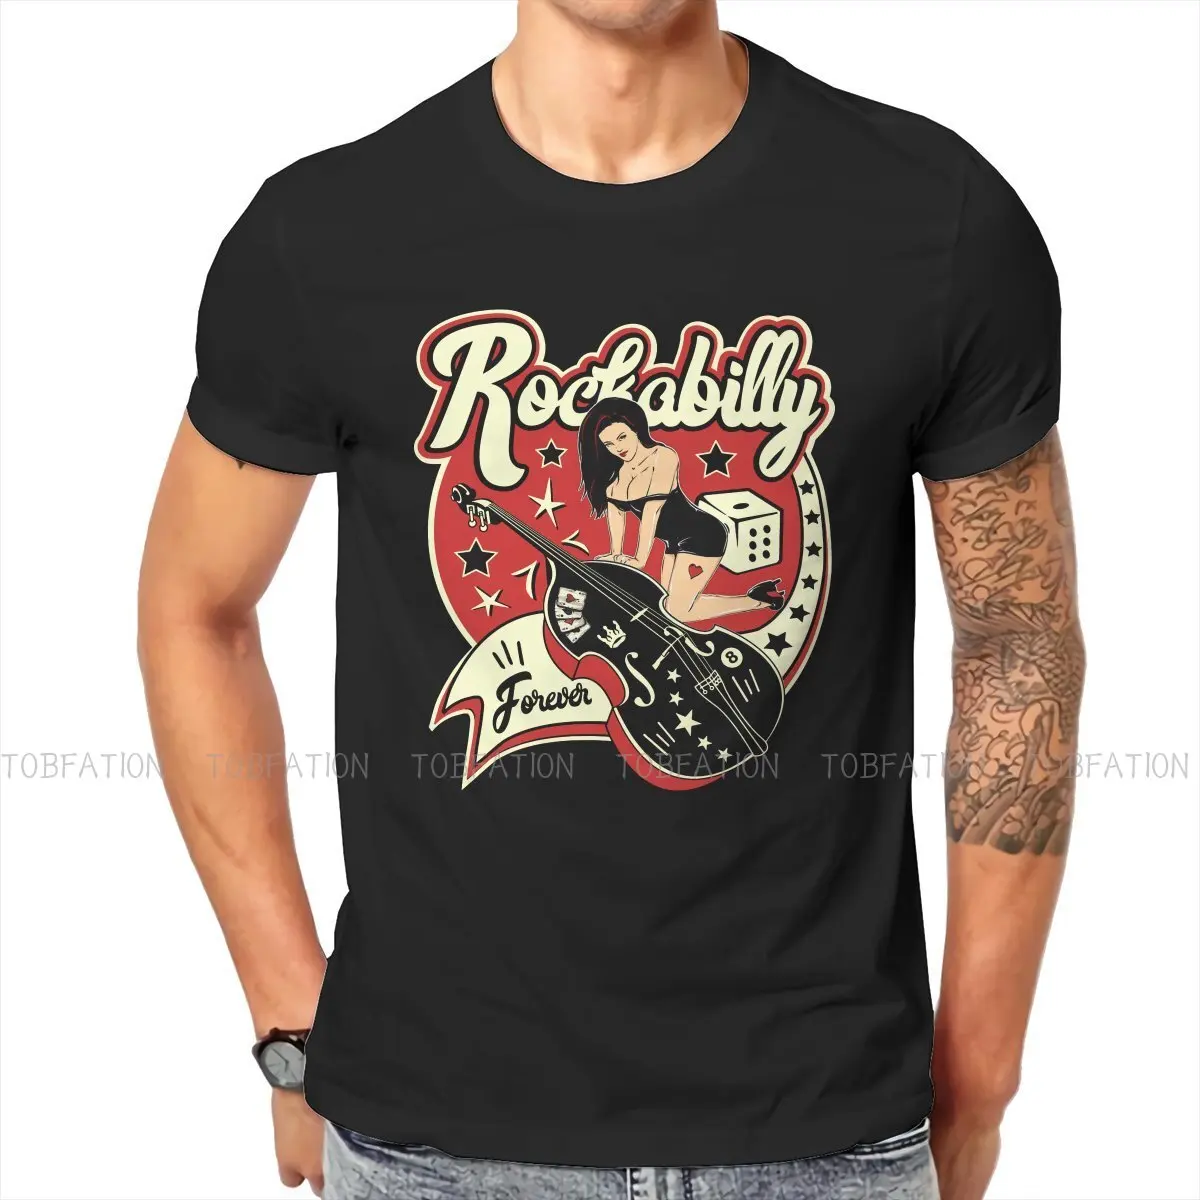 Rockabilly Pinup Sock Hop Rocker Vintage Rock and Roll Music Essential Tshirt Top Men Vintage Grunge Summer Men Clothing T Shirt